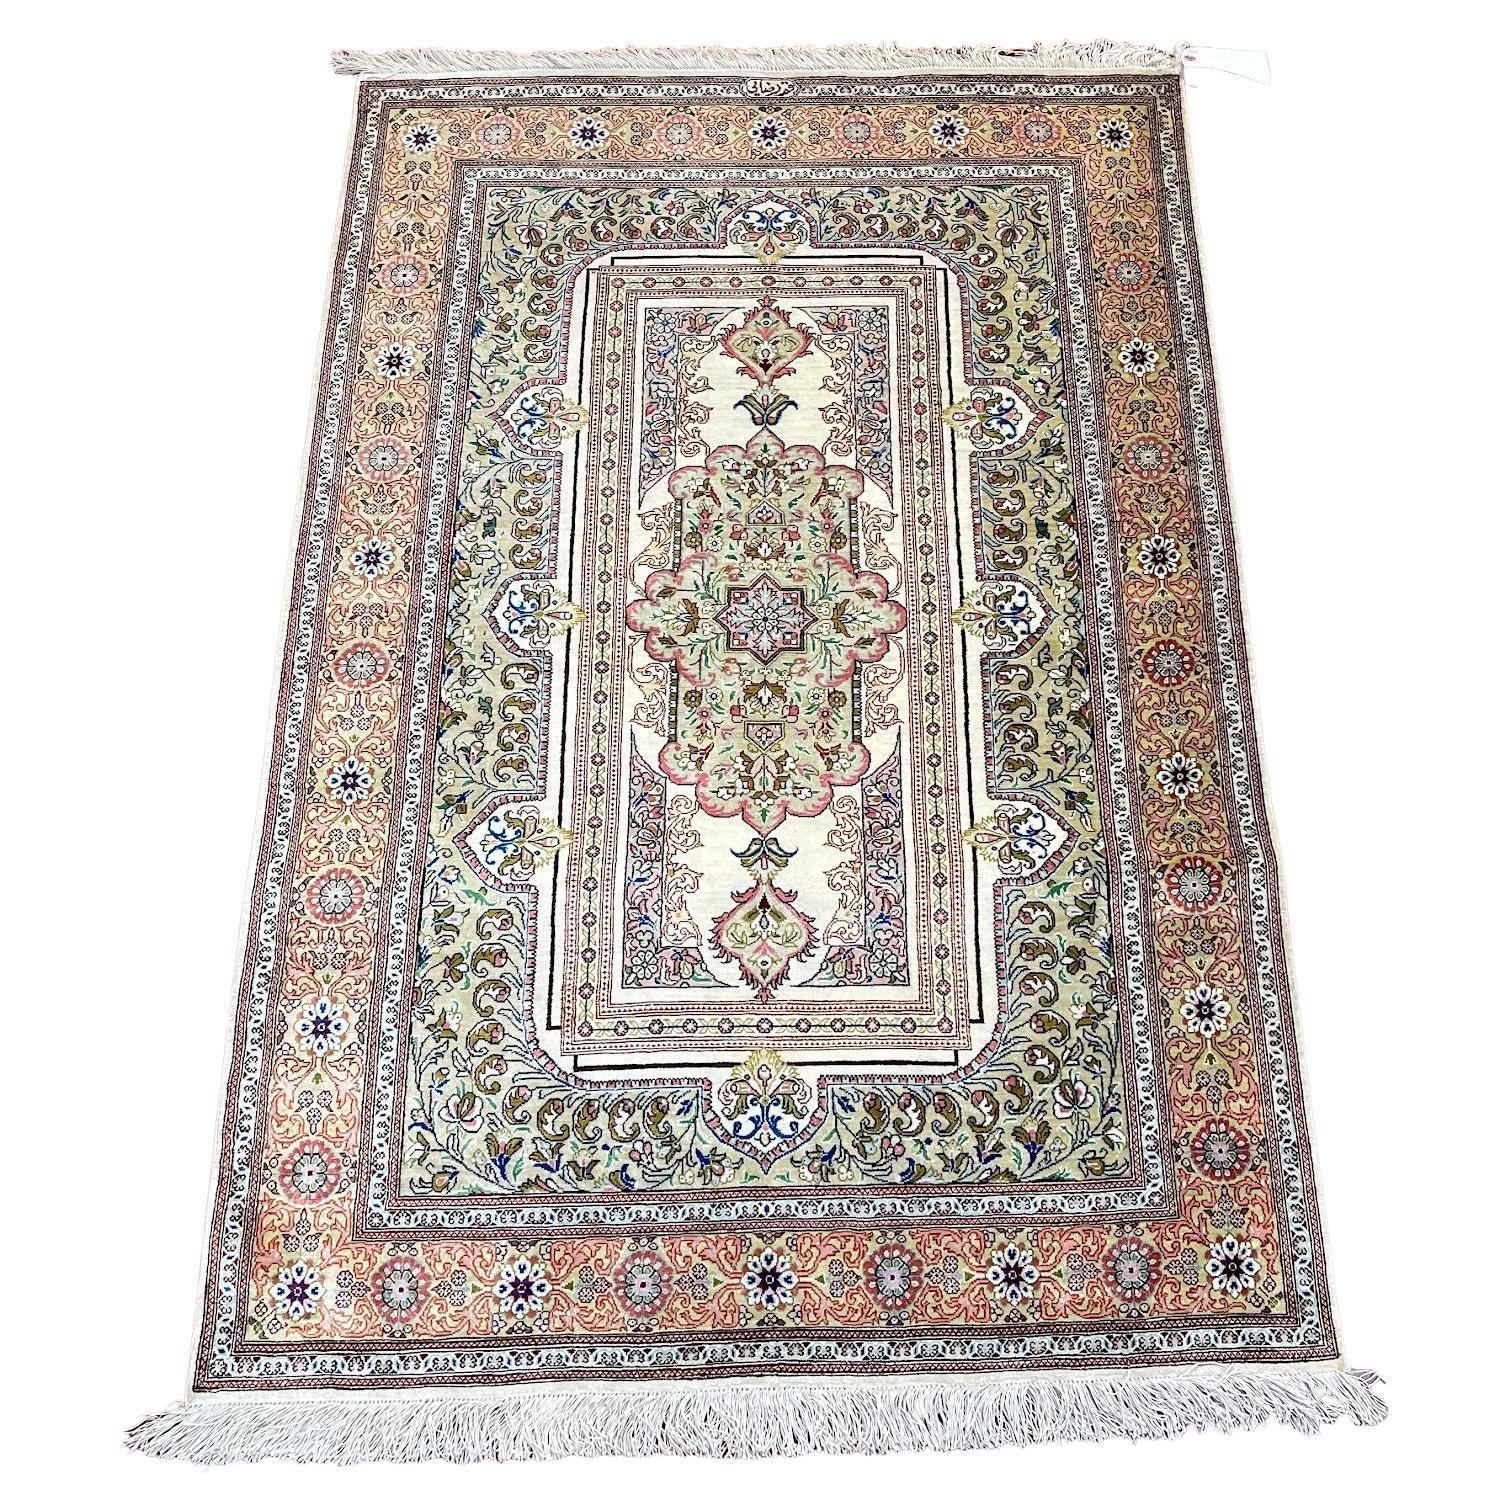 Tapis/Carpet en soie persane extrêmement raffiné